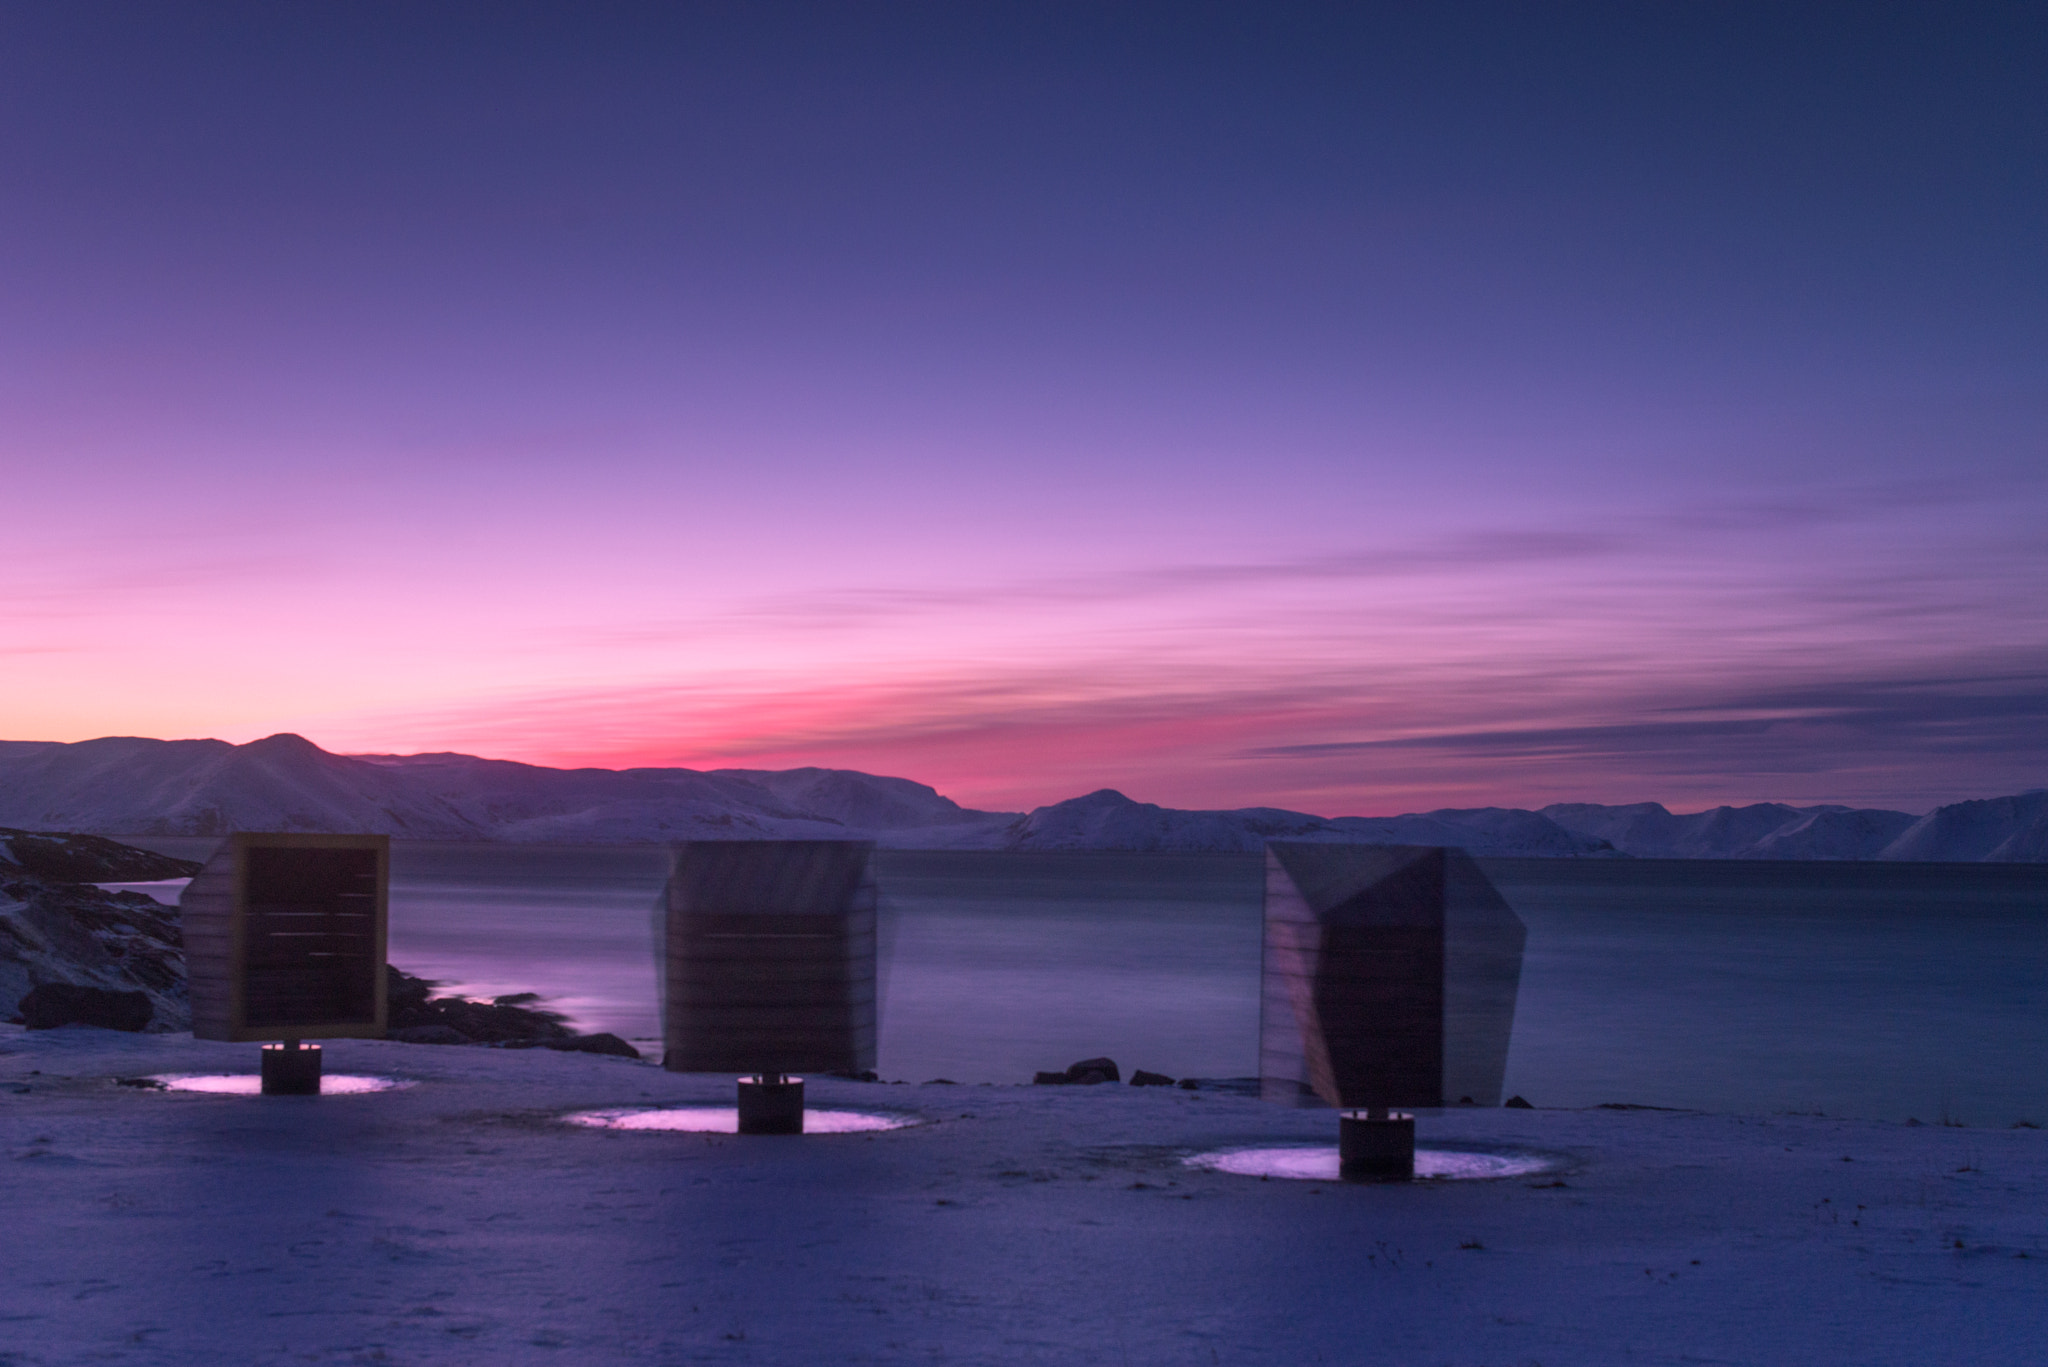 Pentax K-1 sample photo. Gapahukene - arctic norway sunset photography